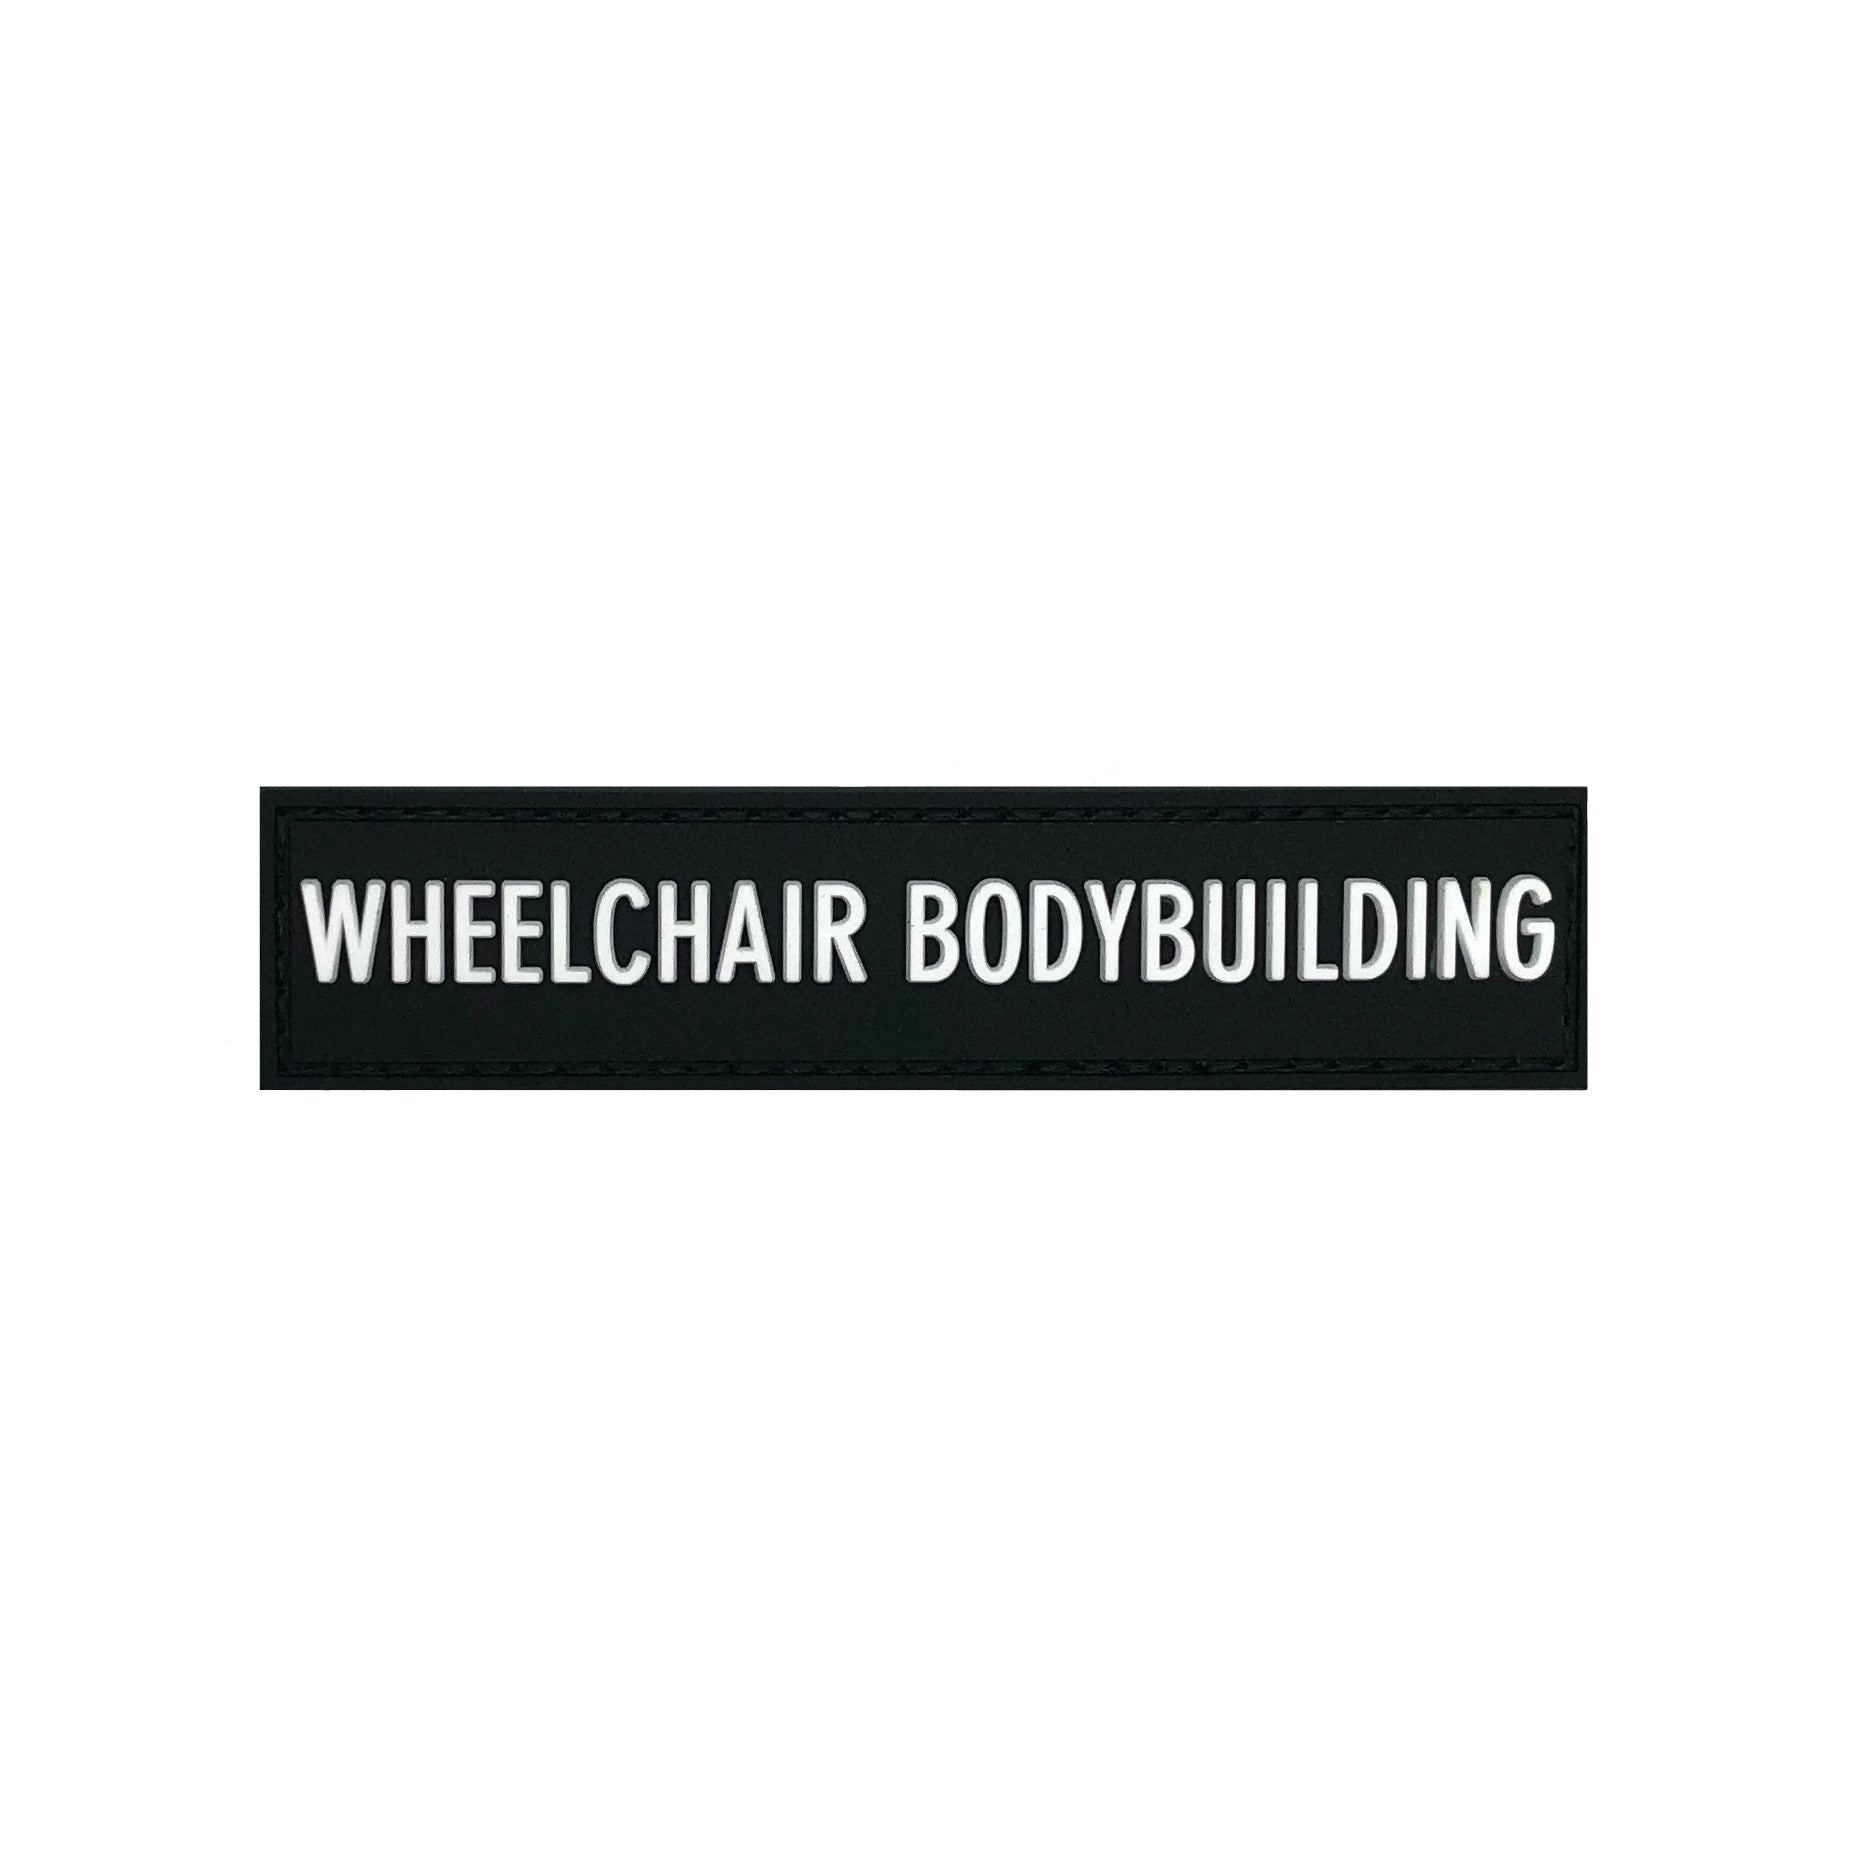 Wheelchair bodybuilding